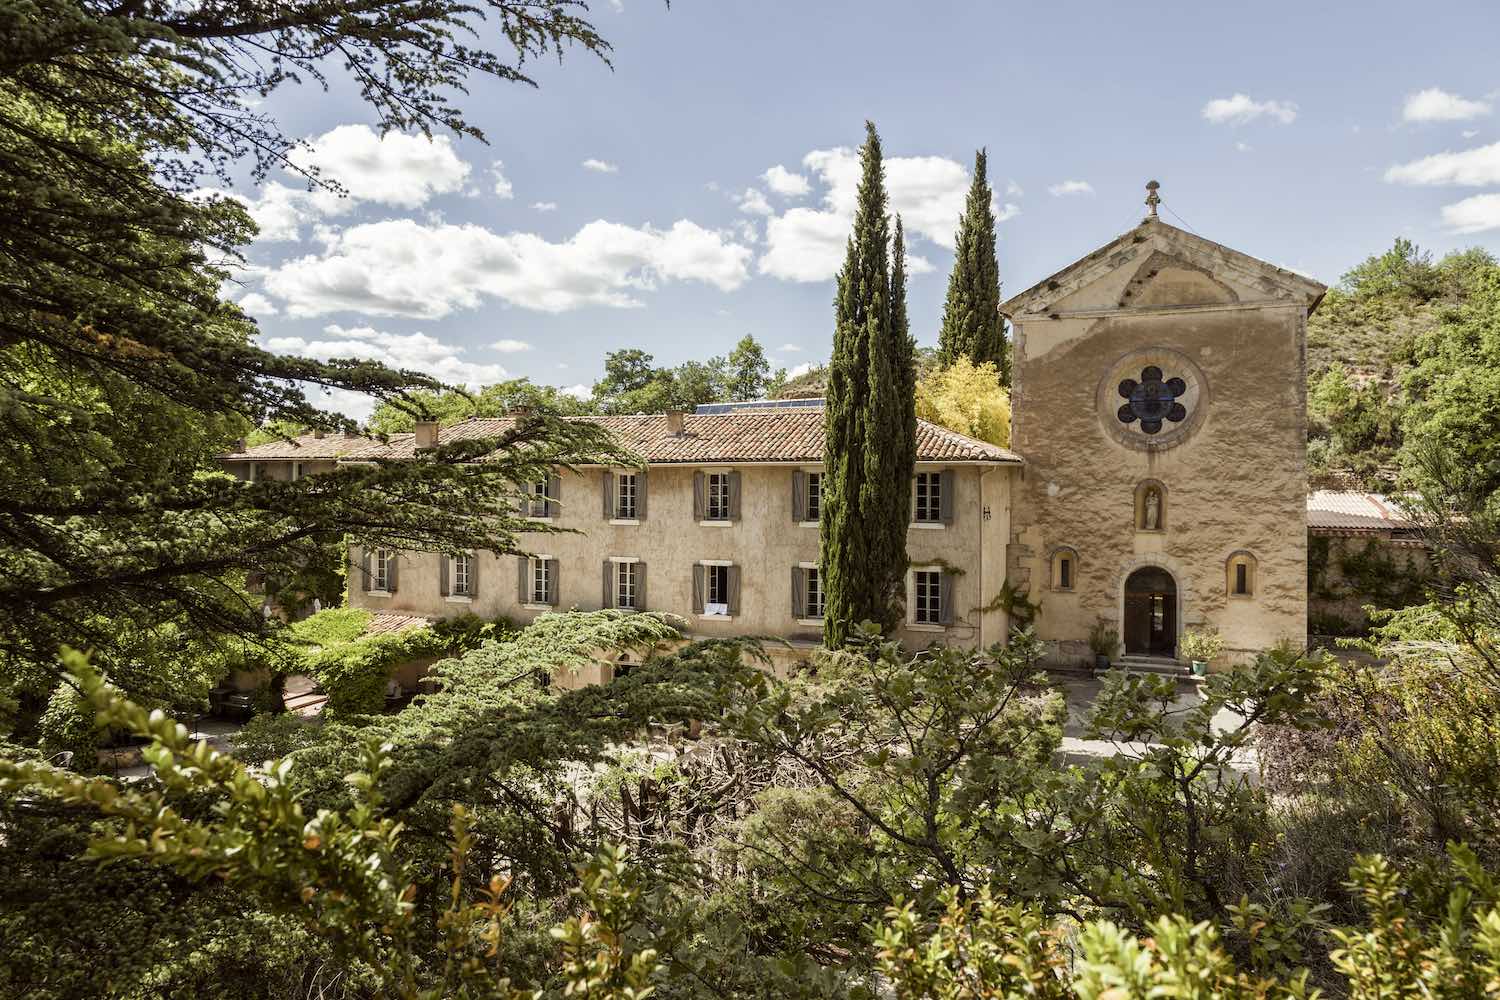 monastere de segries exterieur jeuneetrandonnee 1500x1000 - Monastère de Ségriès